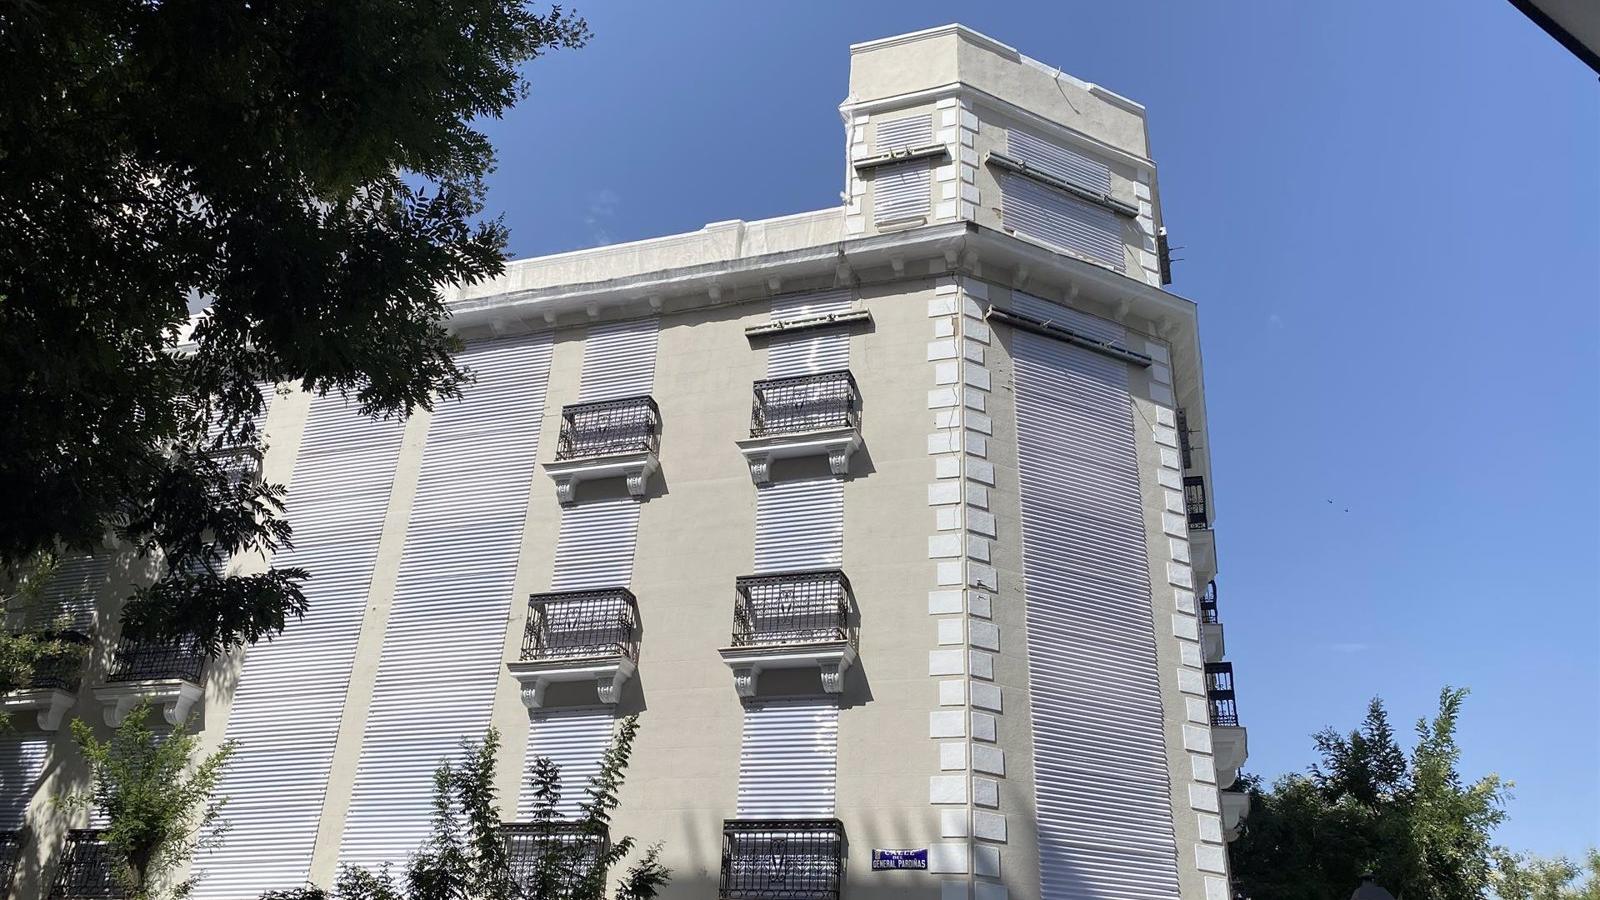 El Ayuntamiento de Madrid entrega el edificio de General Pardiñas a los vecinos, quienes decidirán si lo reconstruyen